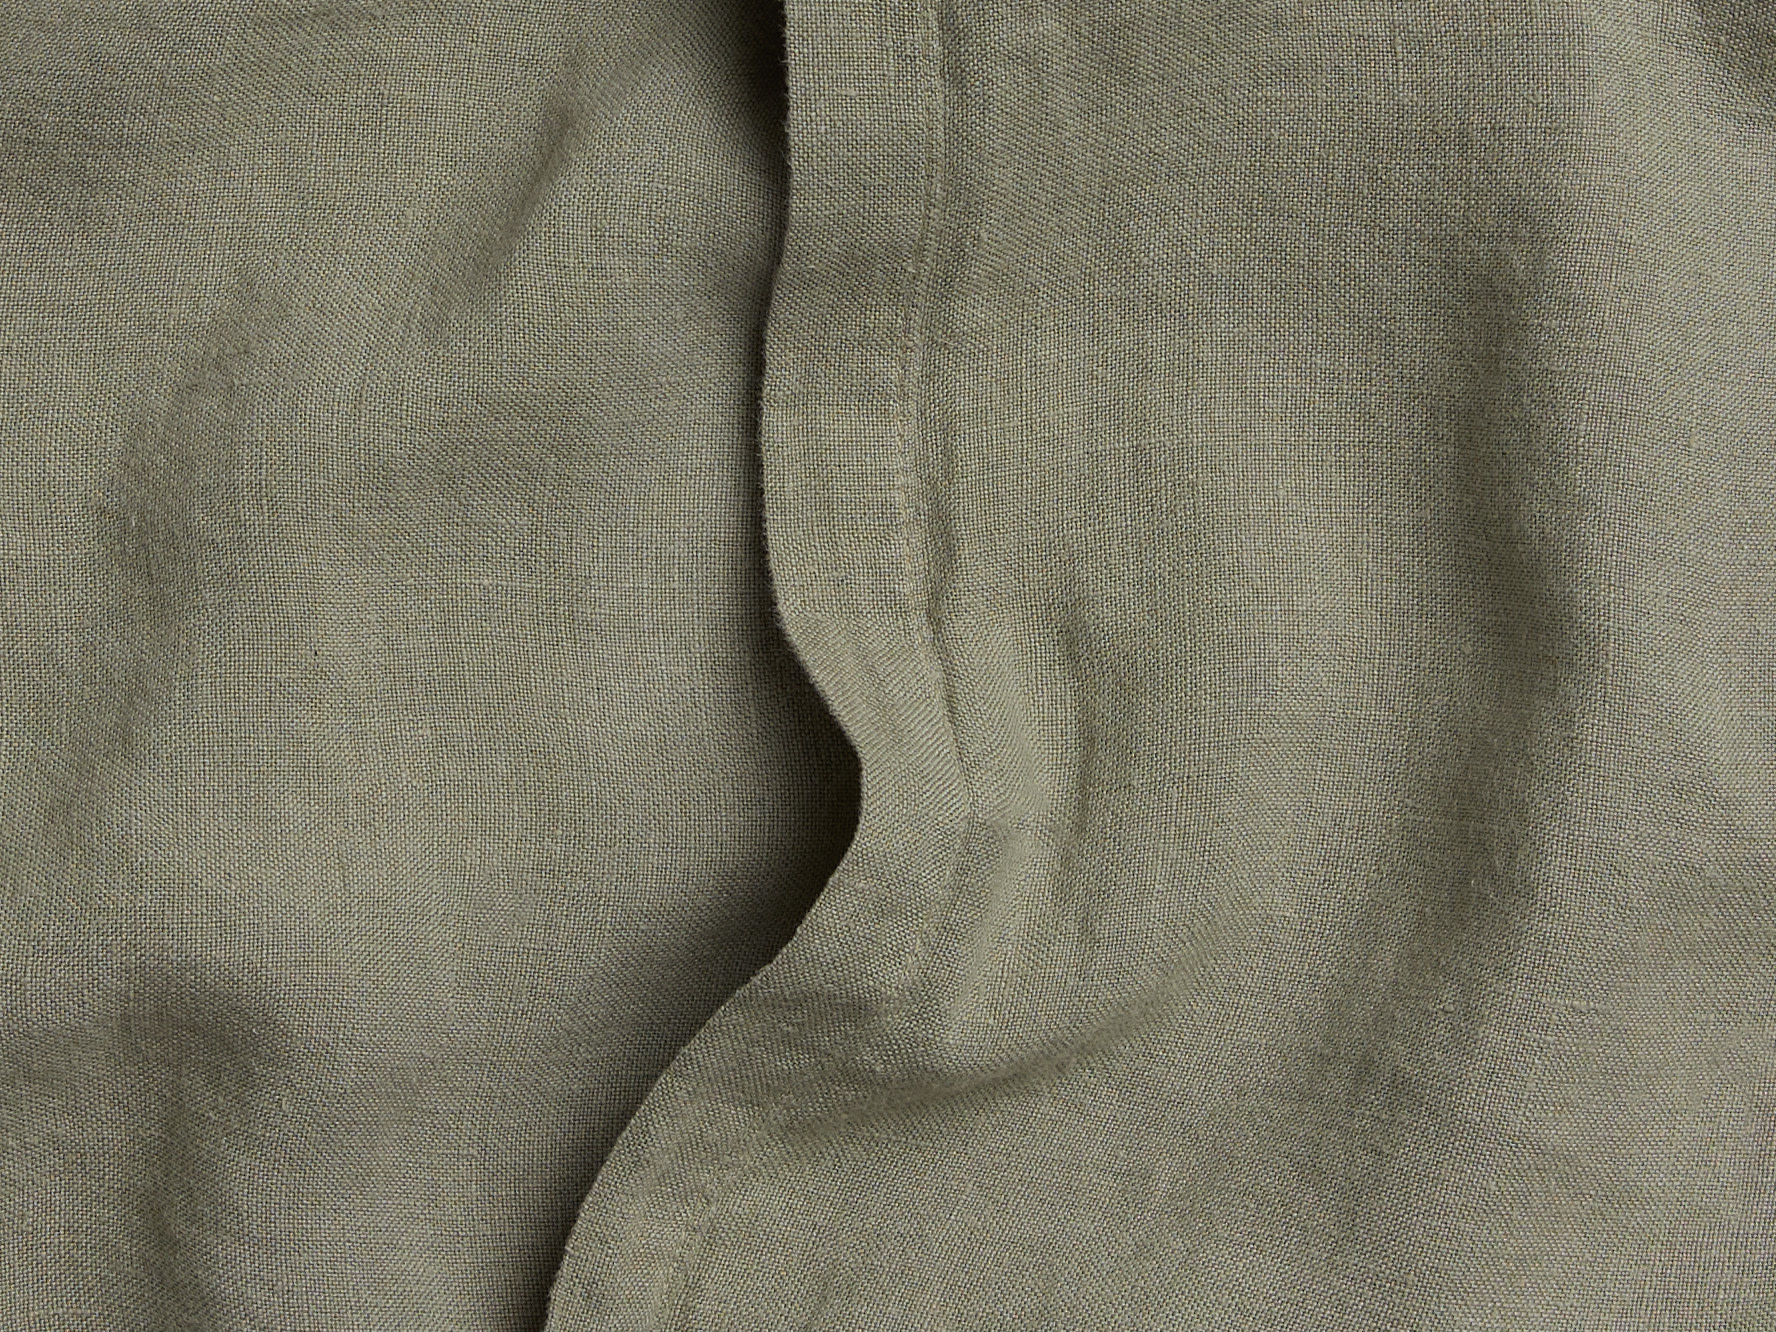 Moss Linen Pillowcase Set